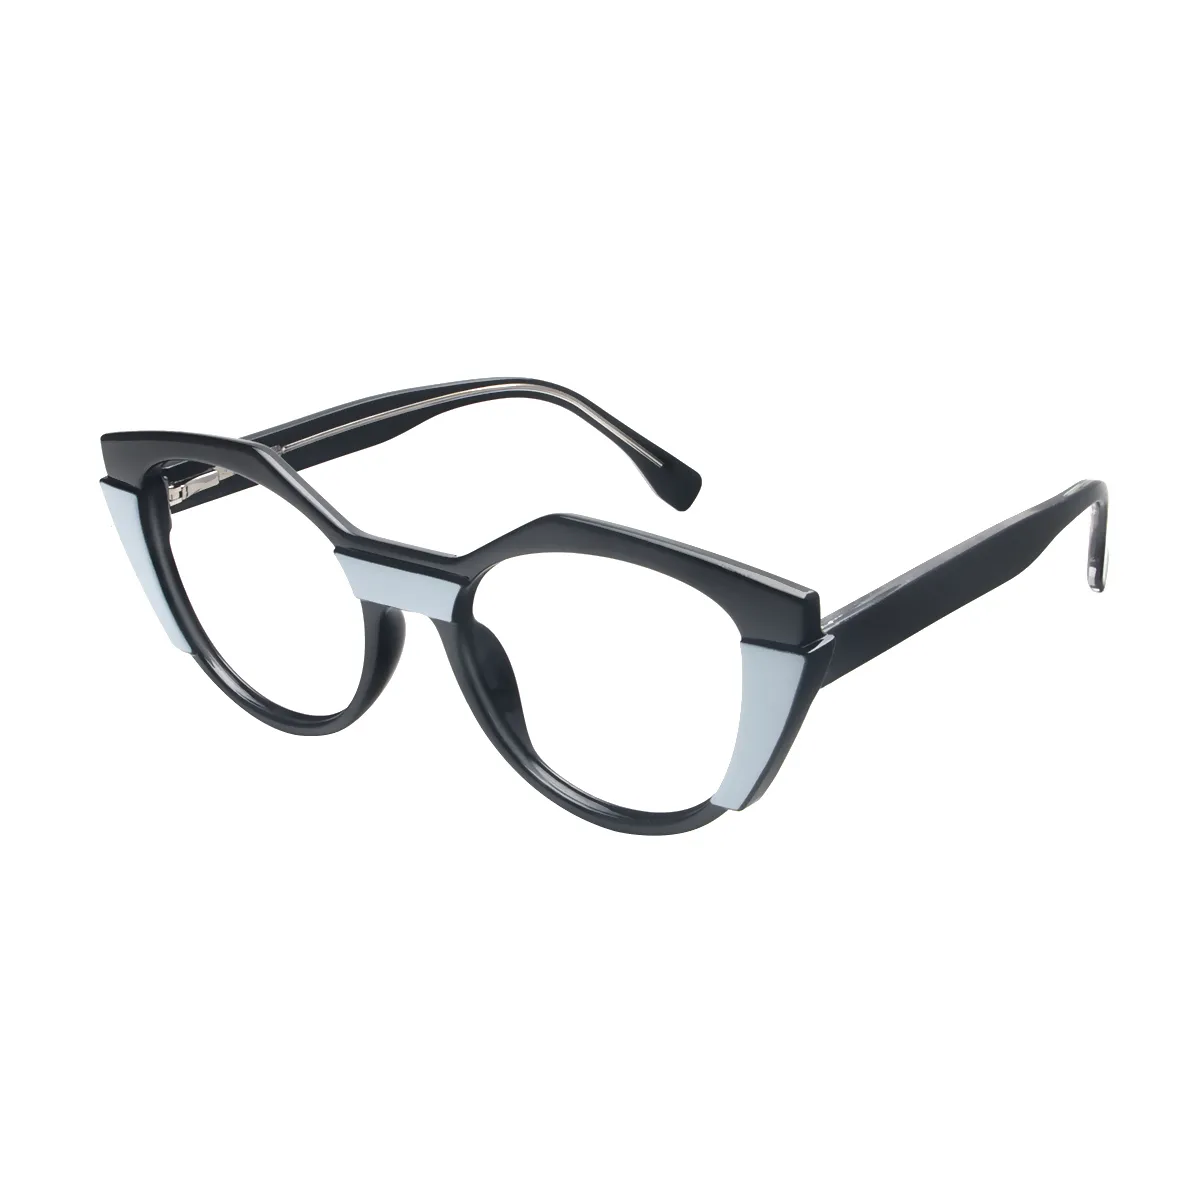 Rosina - Geometric Black Glasses for Women